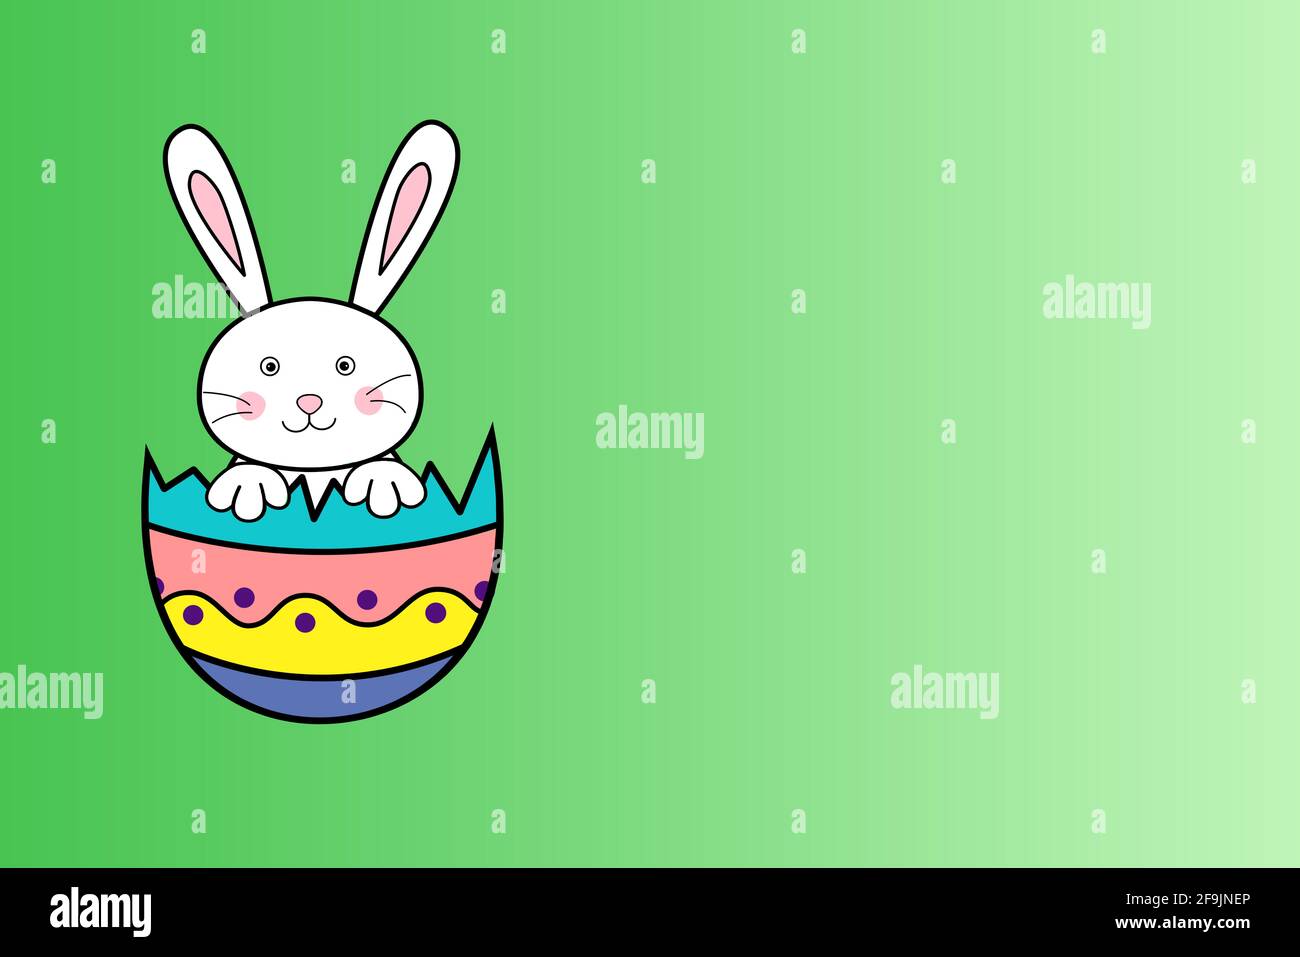 Arrière-plan de l'illustration de la fête de Pâques. Les œufs de Pâques et le lapin sont assis dans une coquille d'œuf fissurée avec un espace vide sur fond vert dégradé. Style de dessin animé Banque D'Images